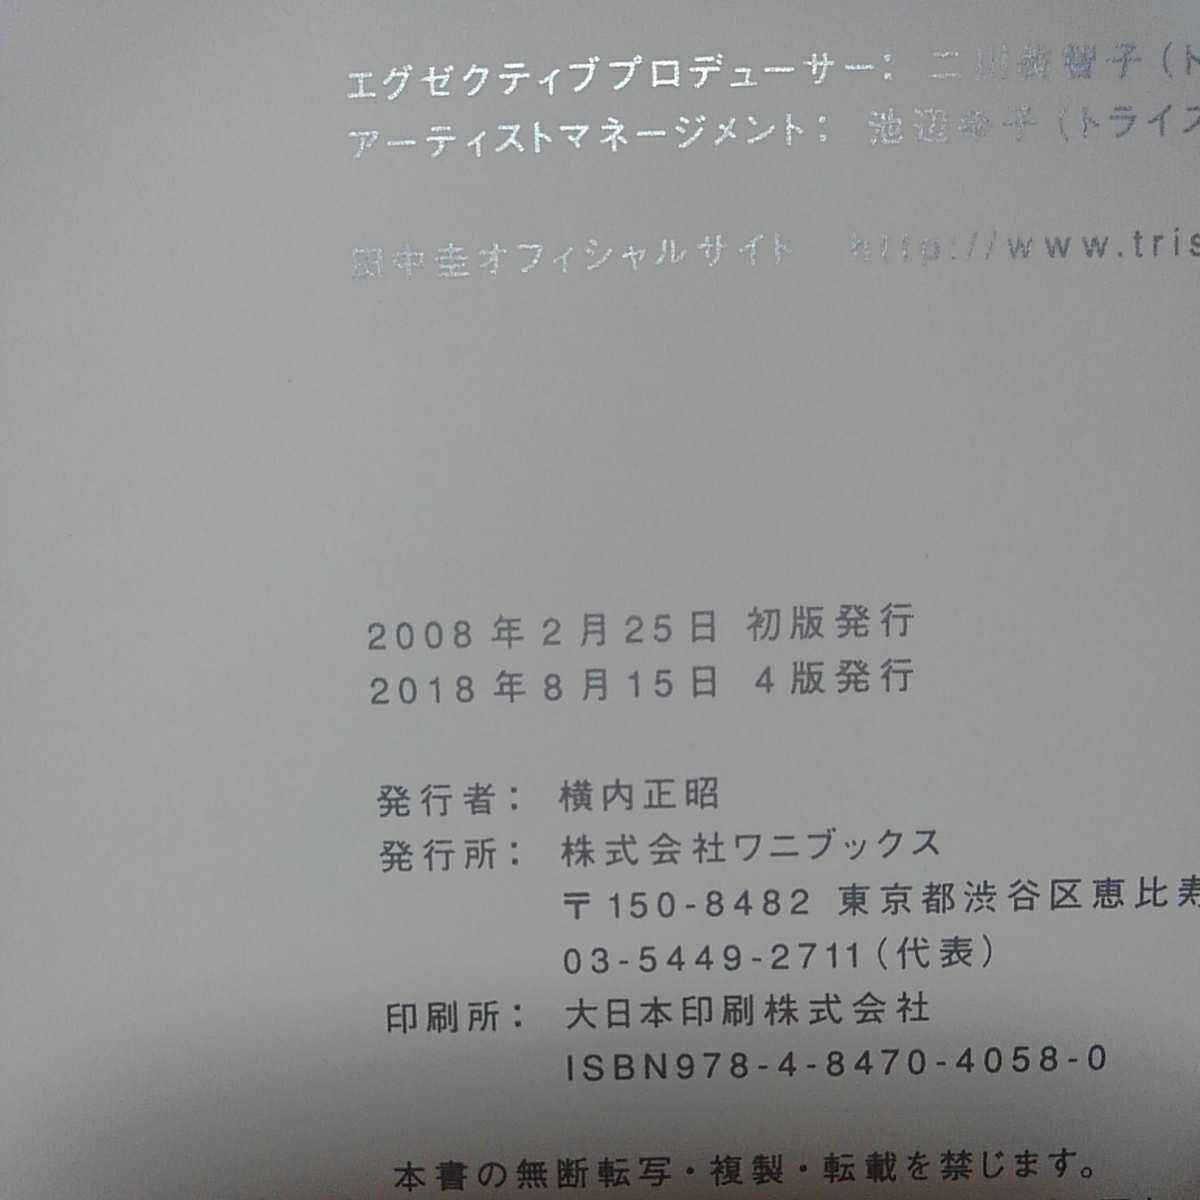 送料込み 田中圭 ファースト 写真集 作品集 花の周りを飛ぶ虫はいつも DVDつき KEI TANAKA 2008.2.25 4版 定価2300円 PHOTO BOOK 帯つき